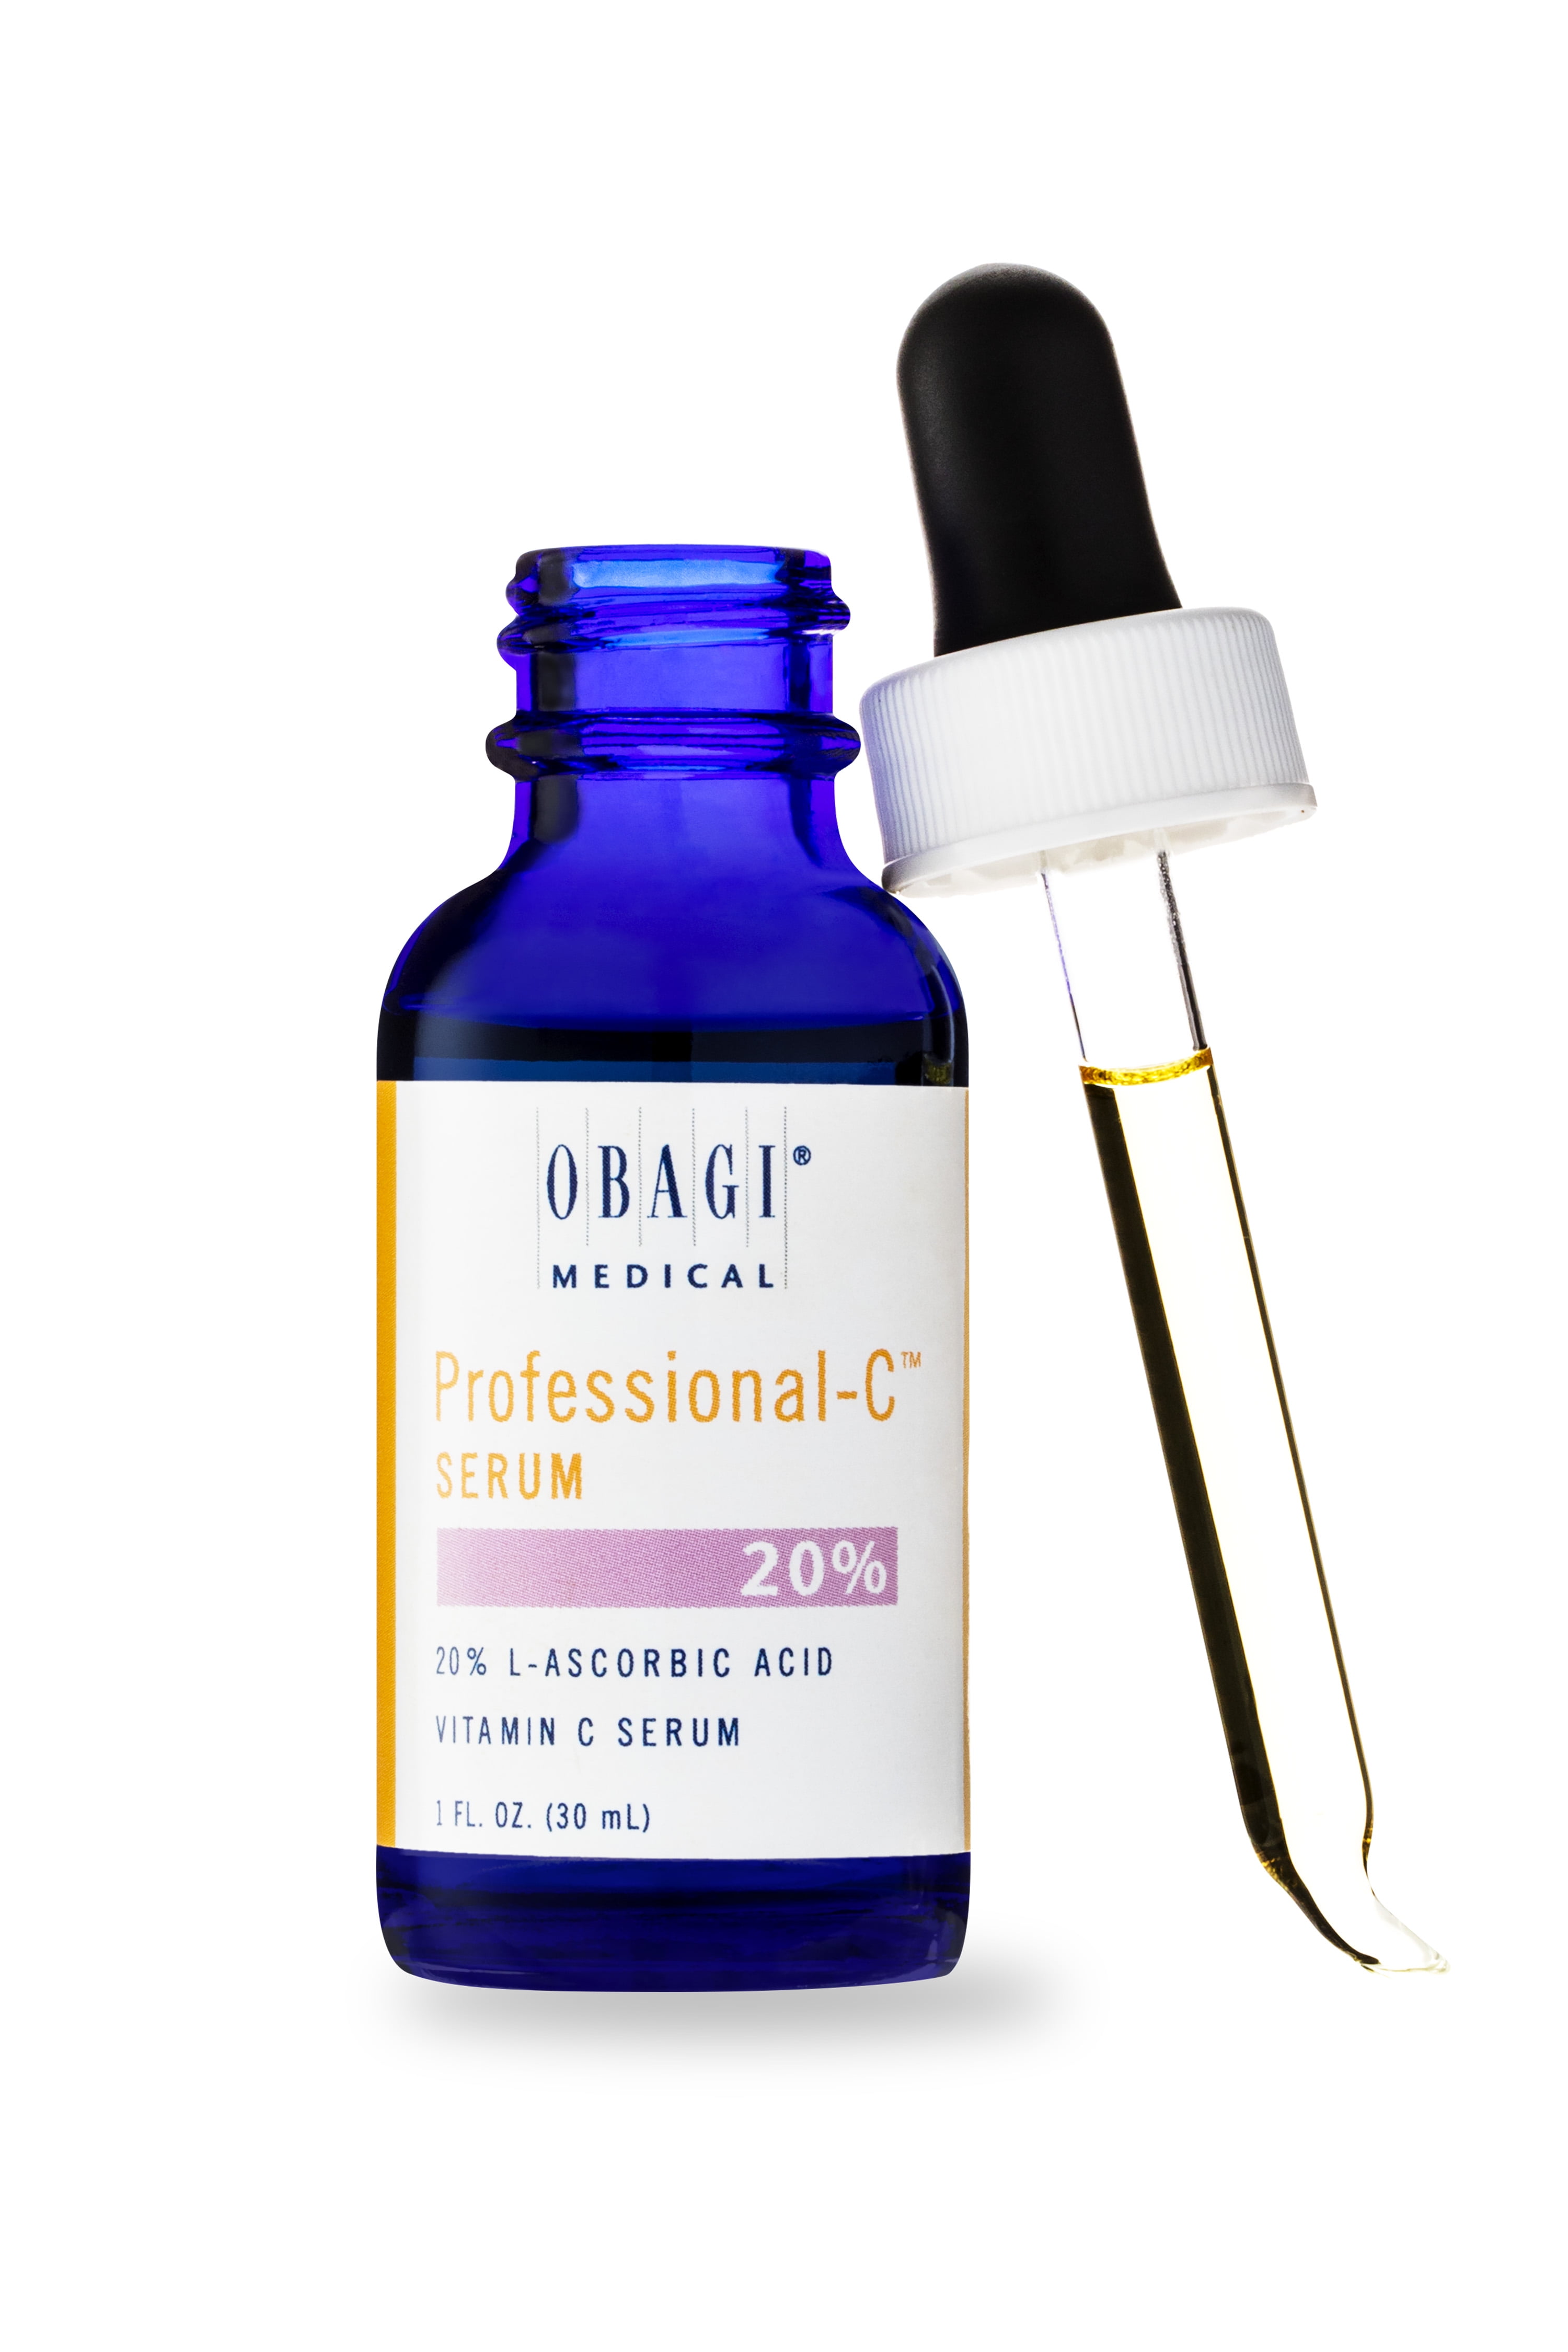 Obagi Professional-C Facial Serum 20%, 1.0 fl. oz.